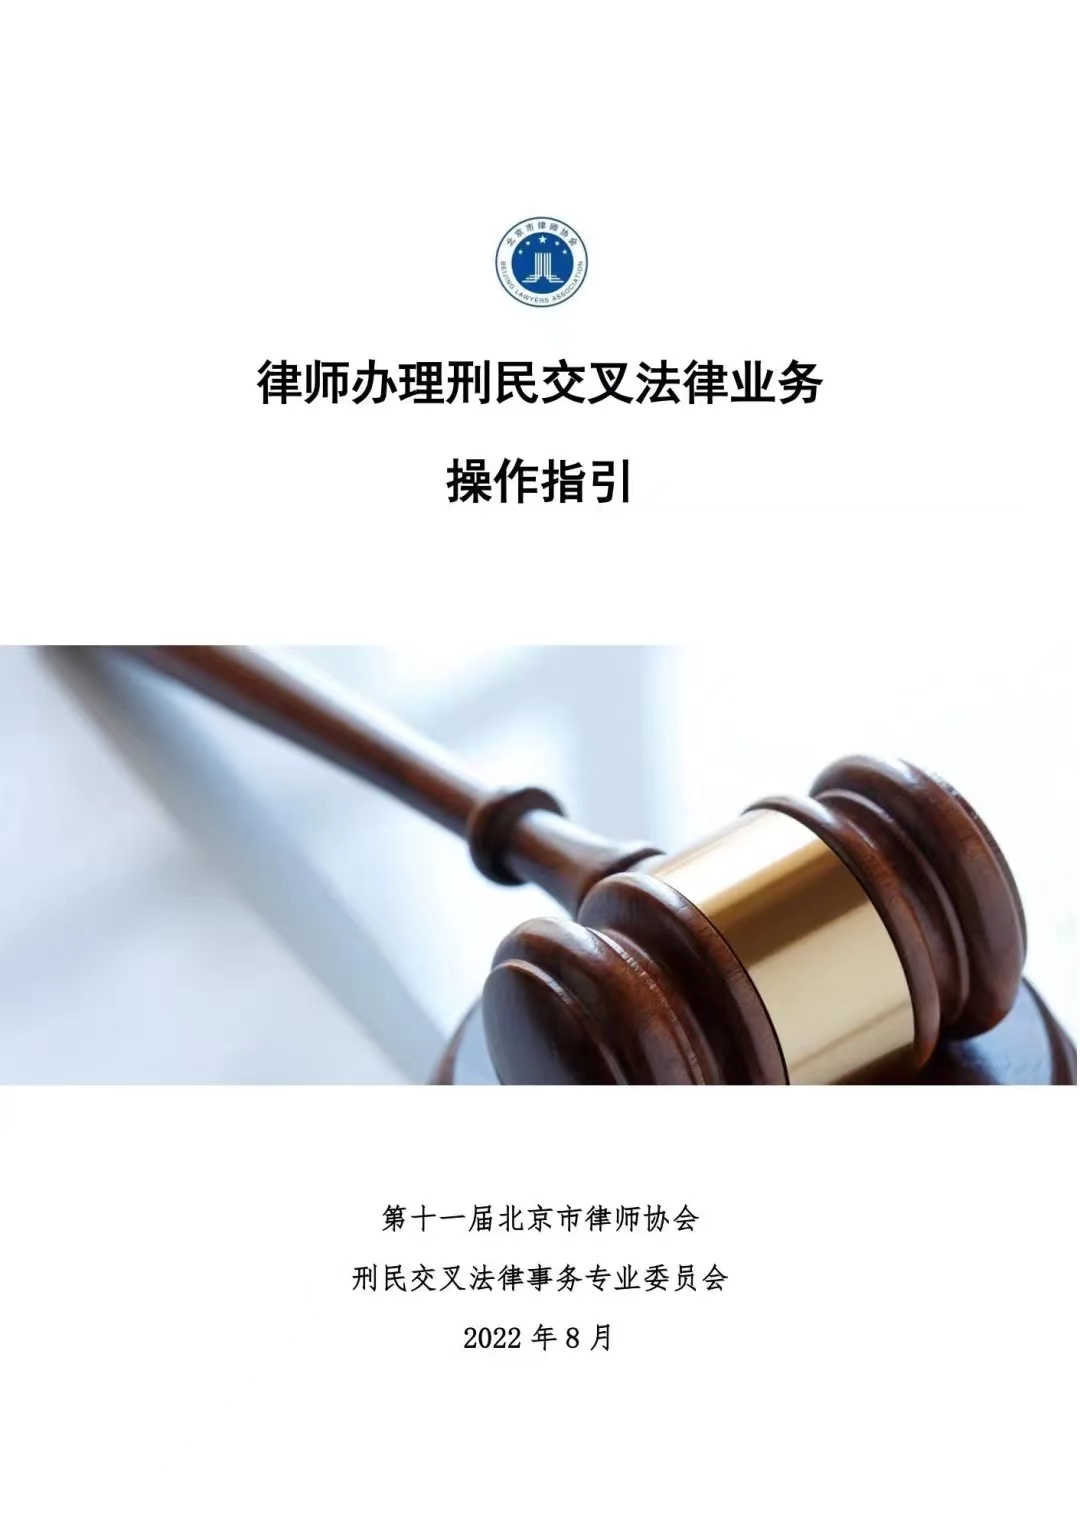 L'Association des avocats de Pékin publie des directives opérationnelles à l'intention des avocats qui pratiquent le droit civil et le droit pénal croisés.